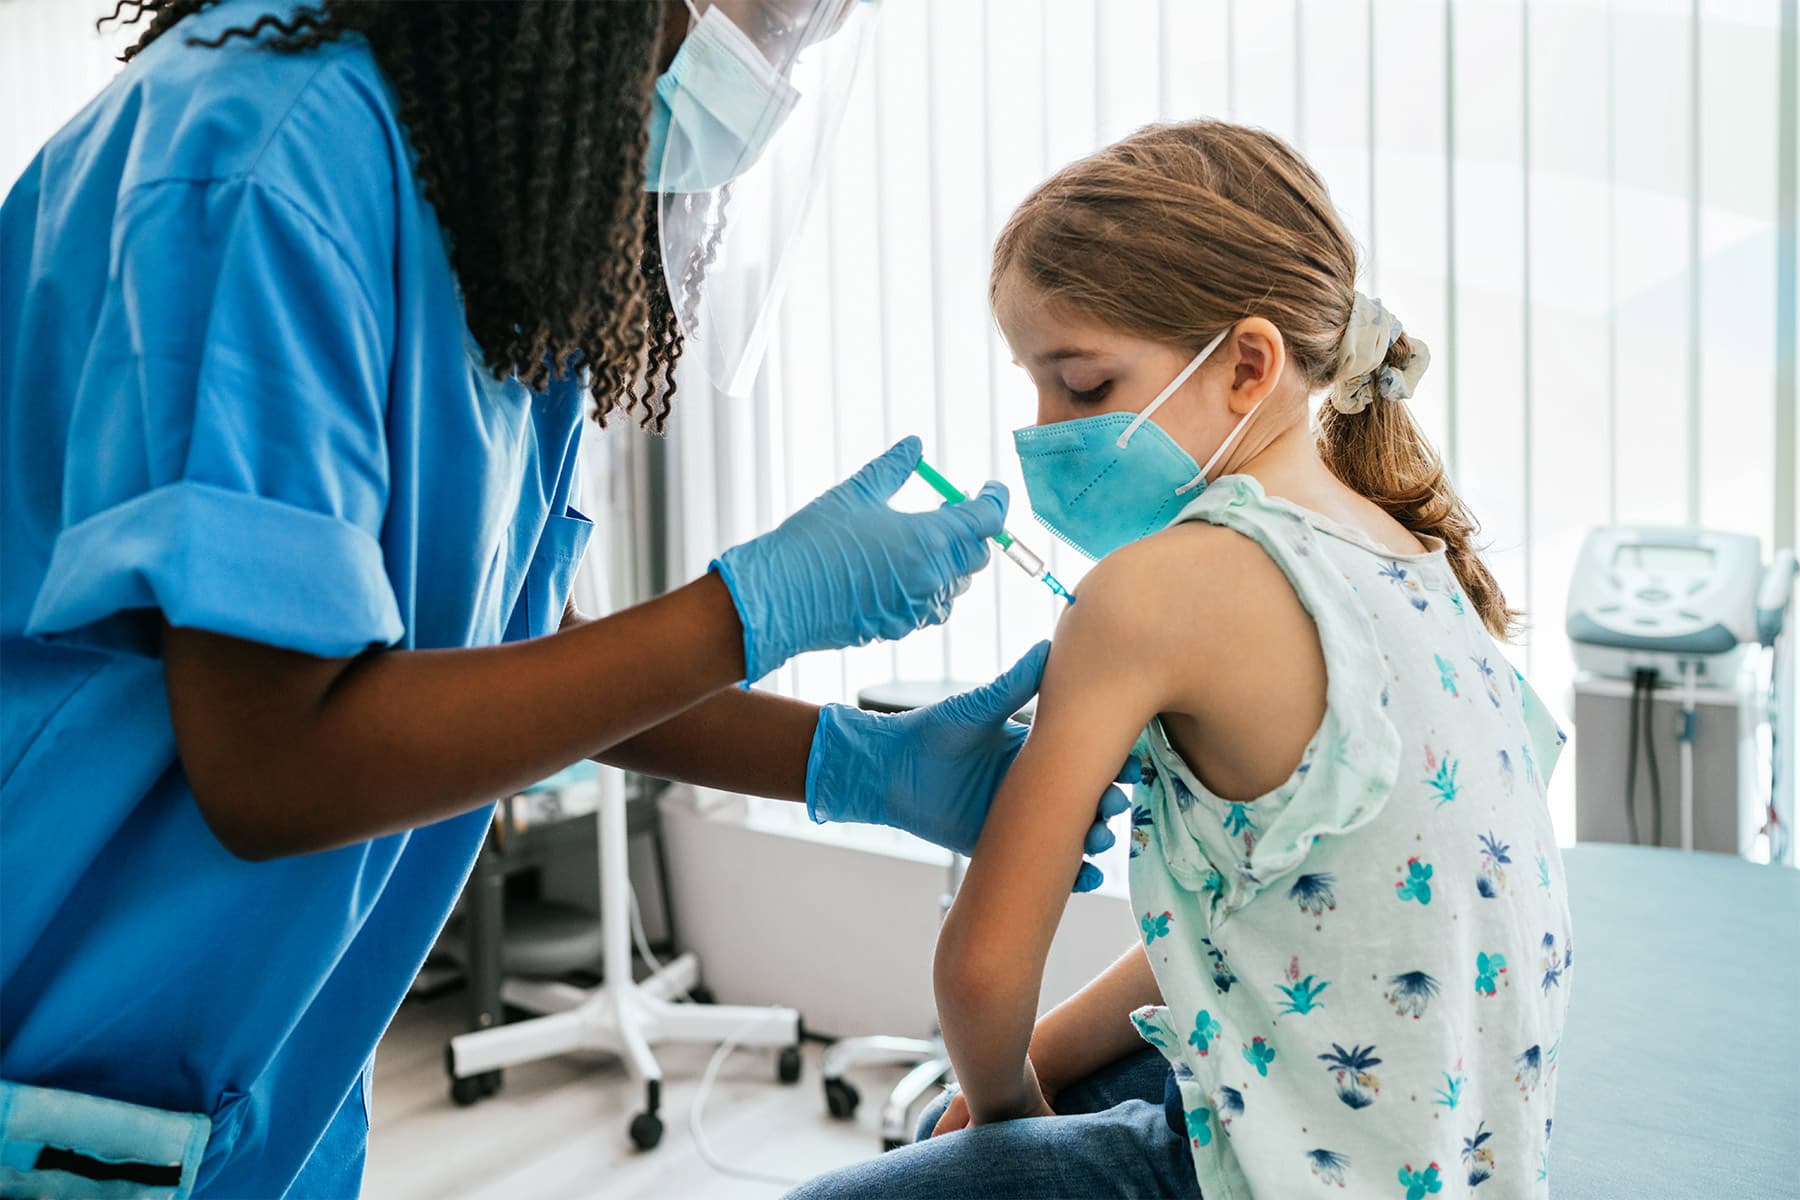 Pediatricians Urge Flu Vaccine for Kids